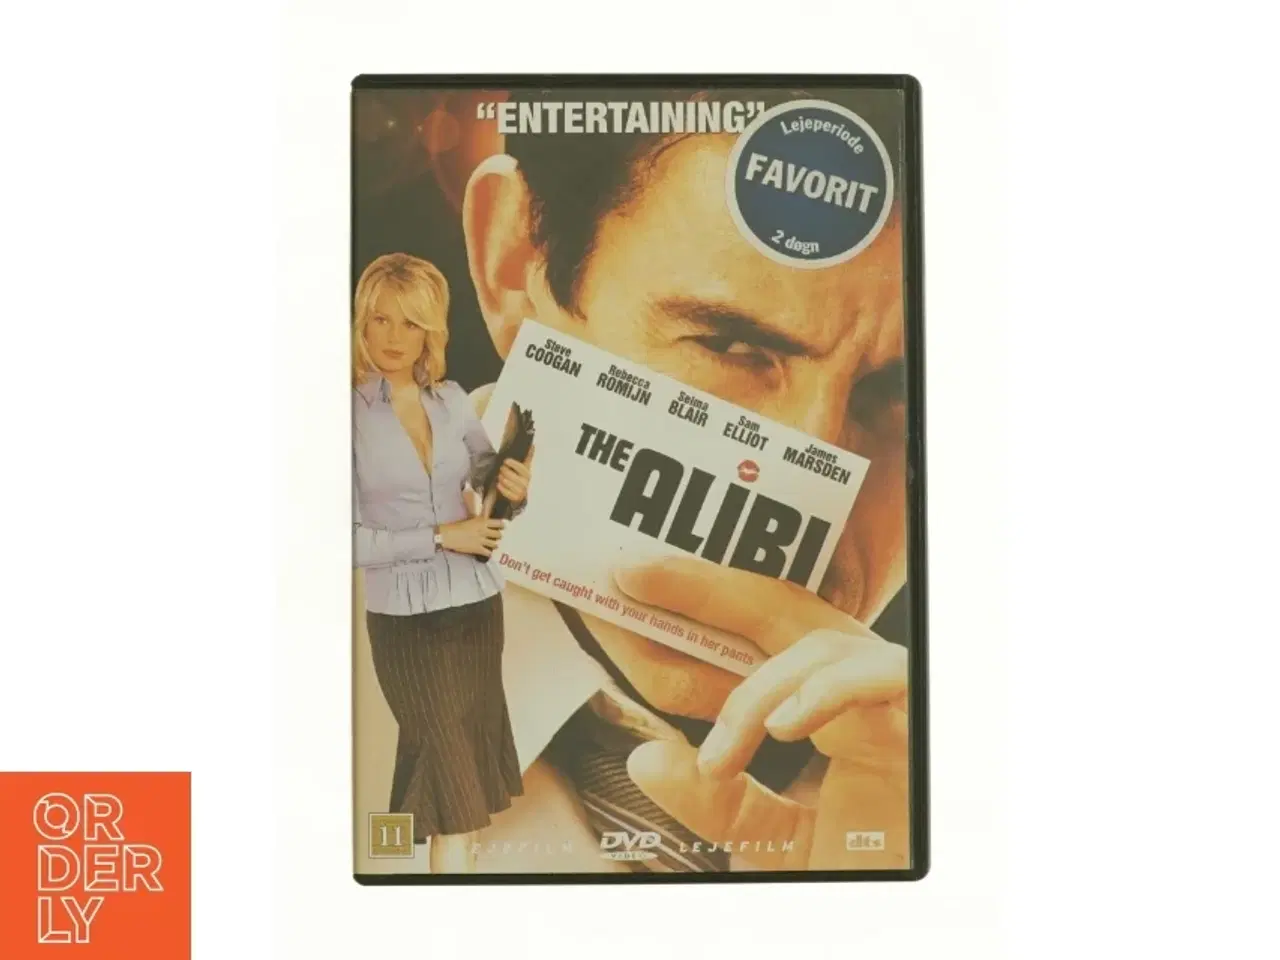 Billede 1 - The alibi fra dvd